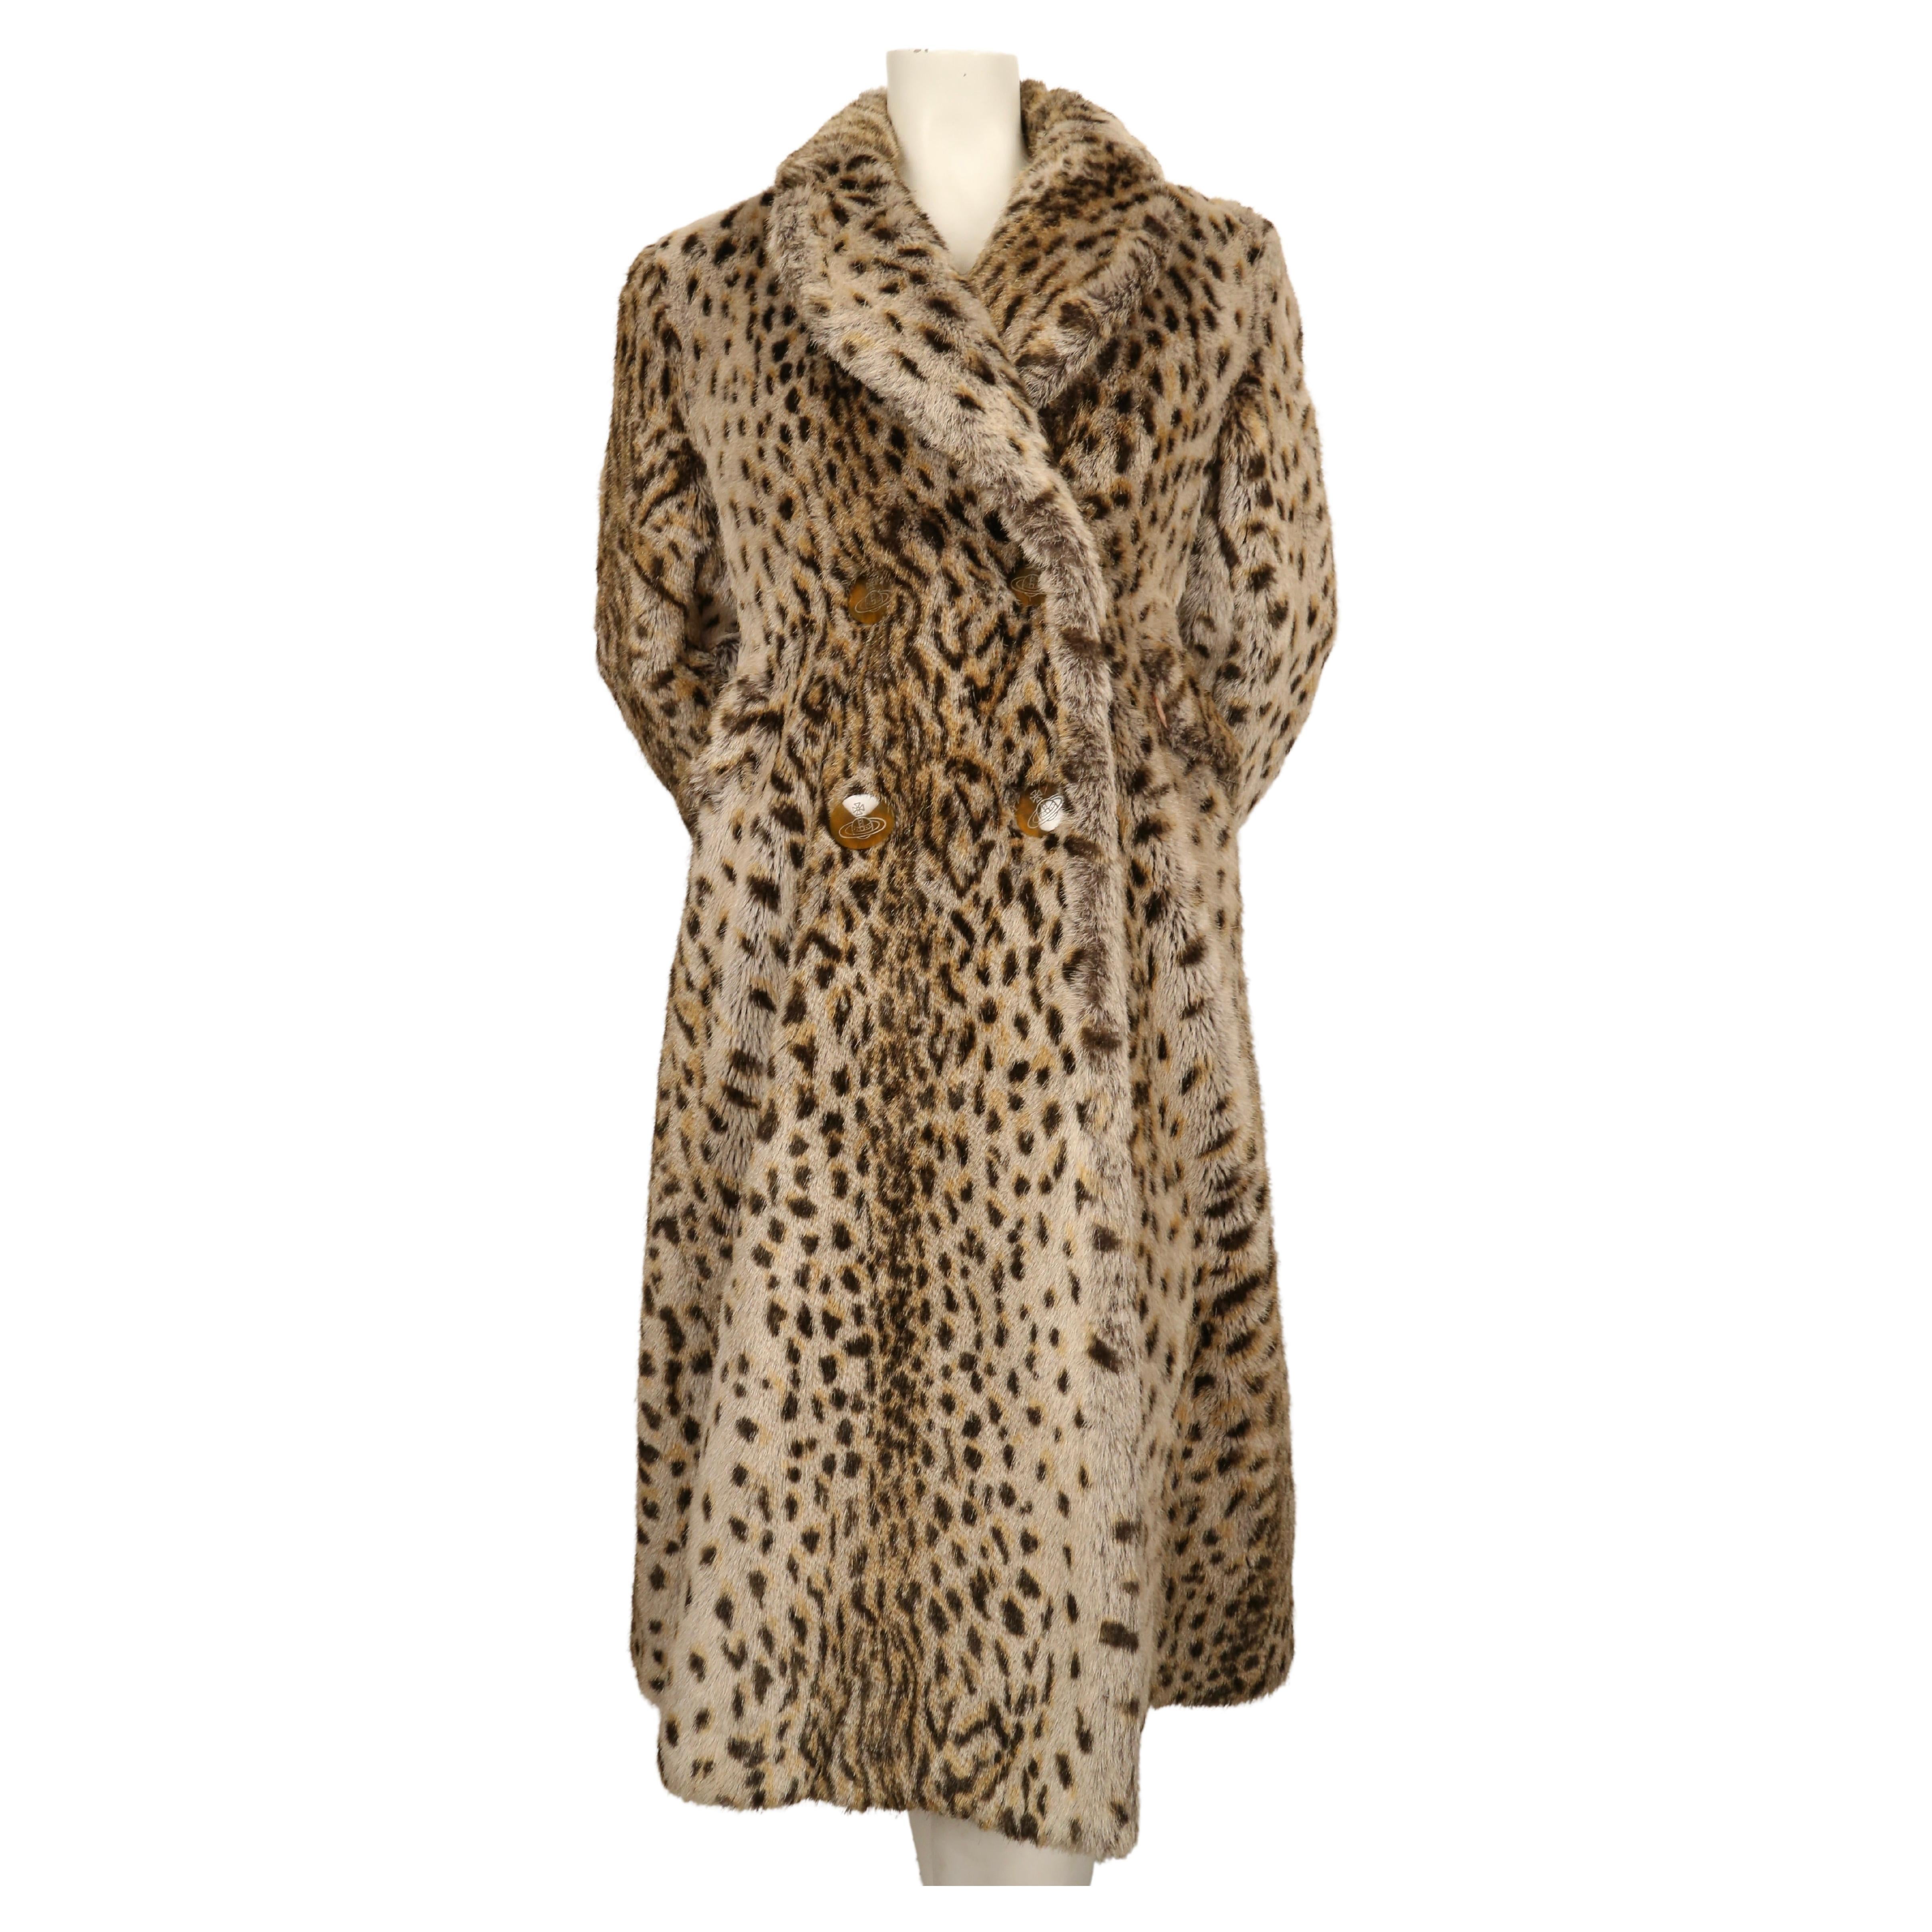 Vivienne Westwood Fur Coat - For Sale on 1stDibs | vivienne westwood faux  fur coat, vivienne westwood leopard coat, vivienne westwood fur jacket